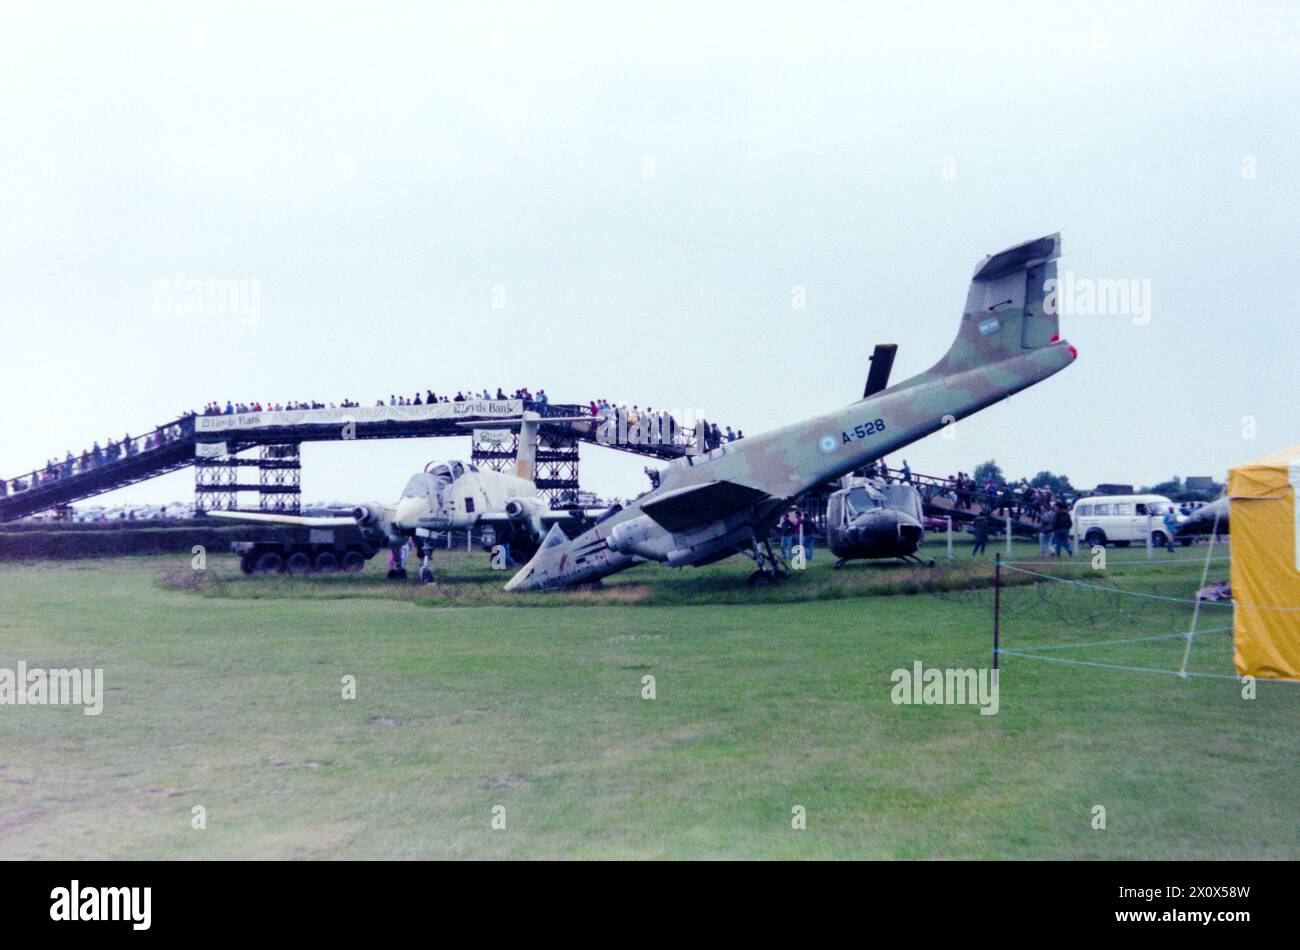 La guerra delle Falklands danneggiò gli aeroplani argentini FMA IA-58 Pucara e l'elicottero Bell UH-1 Iroquois riportato nel Regno Unito e in mostra al di fuori dell'Army Flying Museum a Middle Wallop, Hampshire, Regno Unito nel 1986. Catturato "bottino di guerra". Trovato dalle forze britanniche all'aeroporto di Port Stanley nelle Falkland, L'A-528 unì una quantità di oggetti spediti nel Regno Unito dopo il conflitto. Successivamente riparato e messo in mostra al Norfolk and Suffolk Aviation Museum, Flixton, Regno Unito Foto Stock